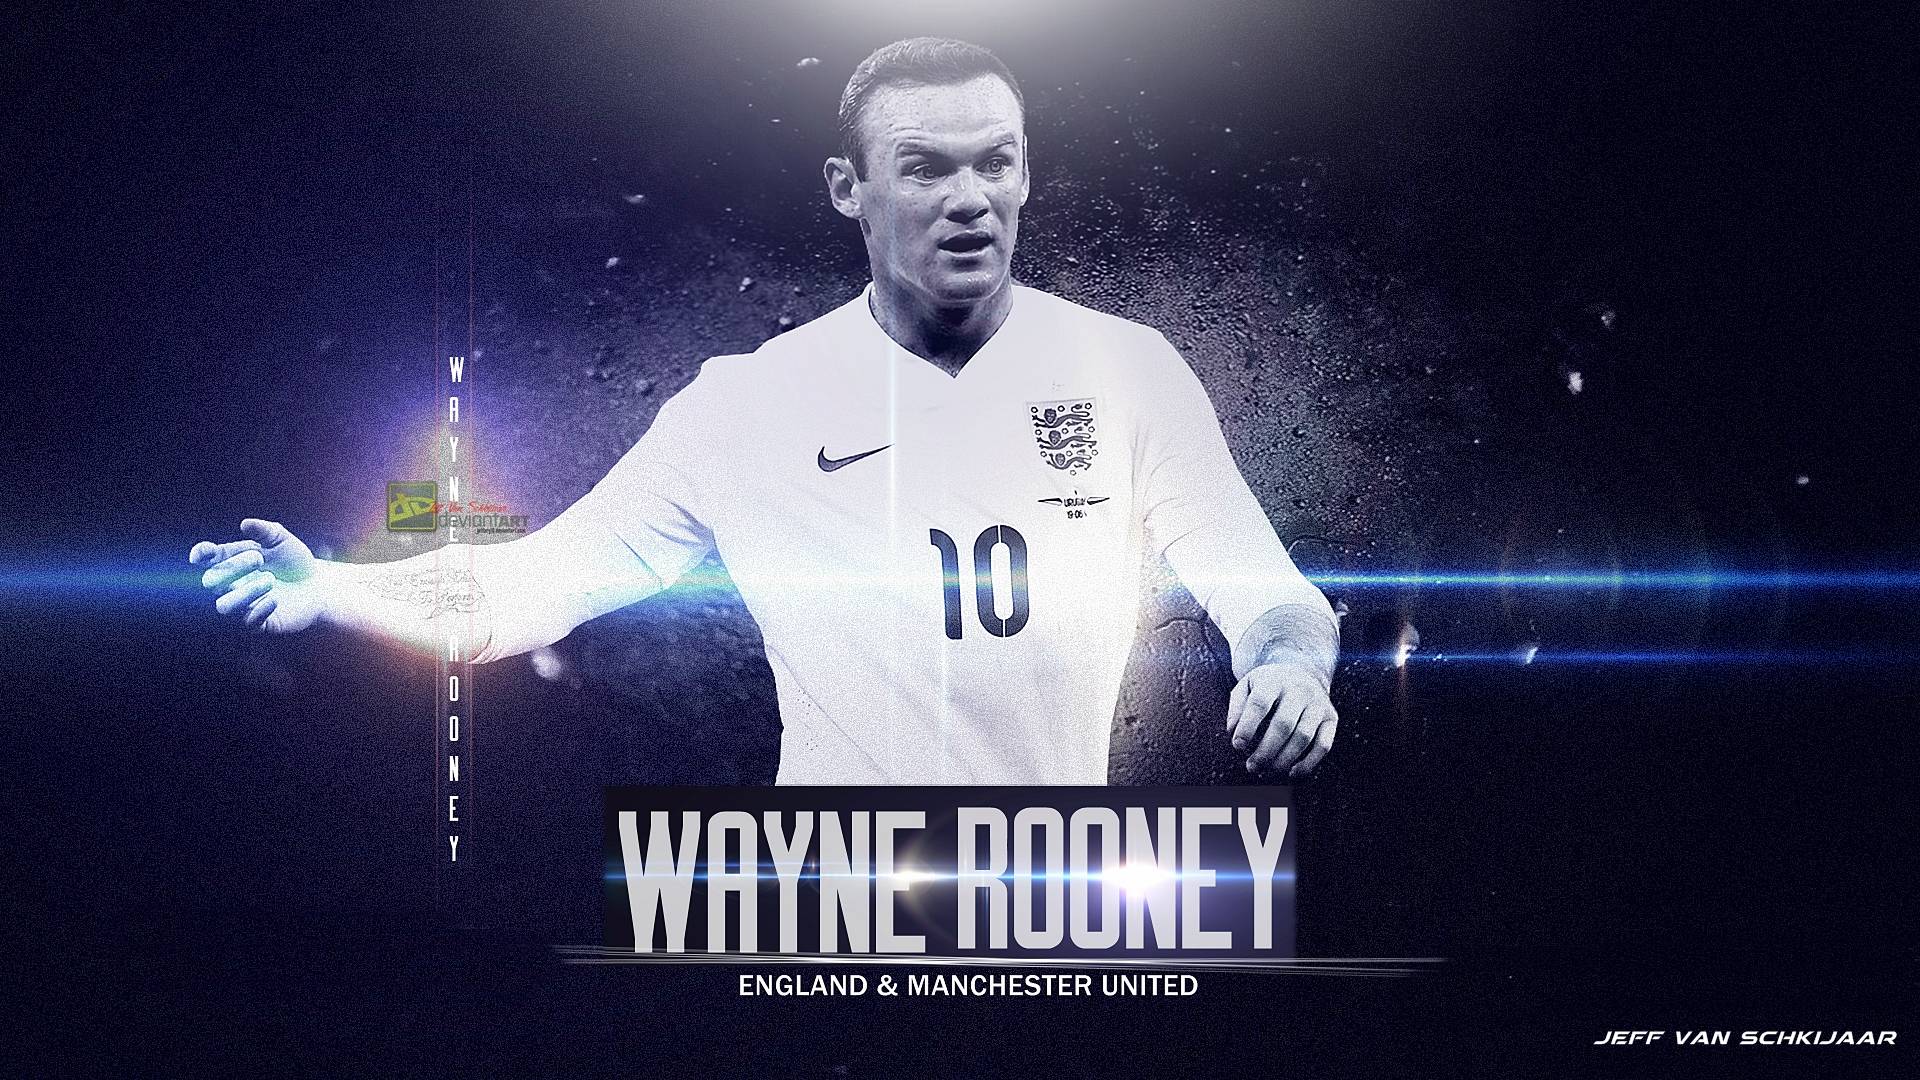 Wayne Rooney Wallpapers 2015 1920x1080